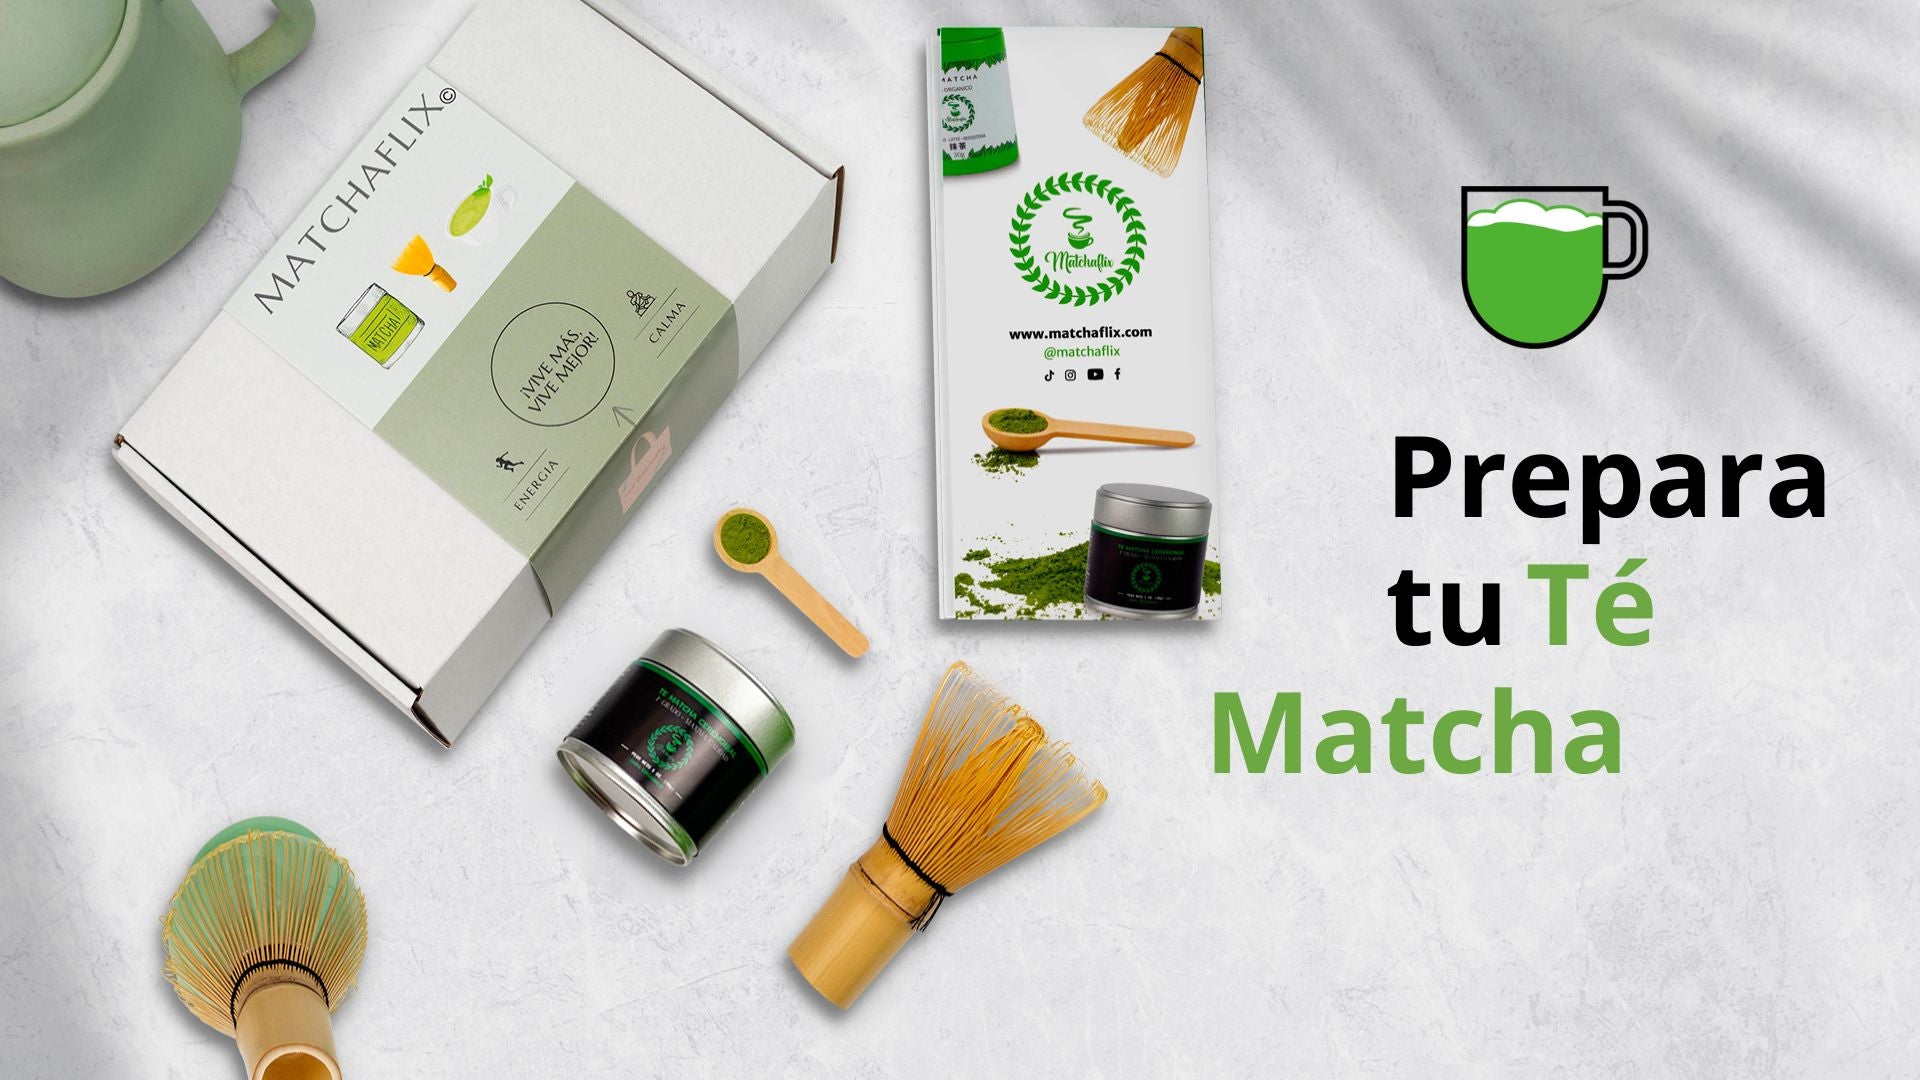 Utensilios que no pueden faltar en tu té matcha kit – MATCHAFLIX